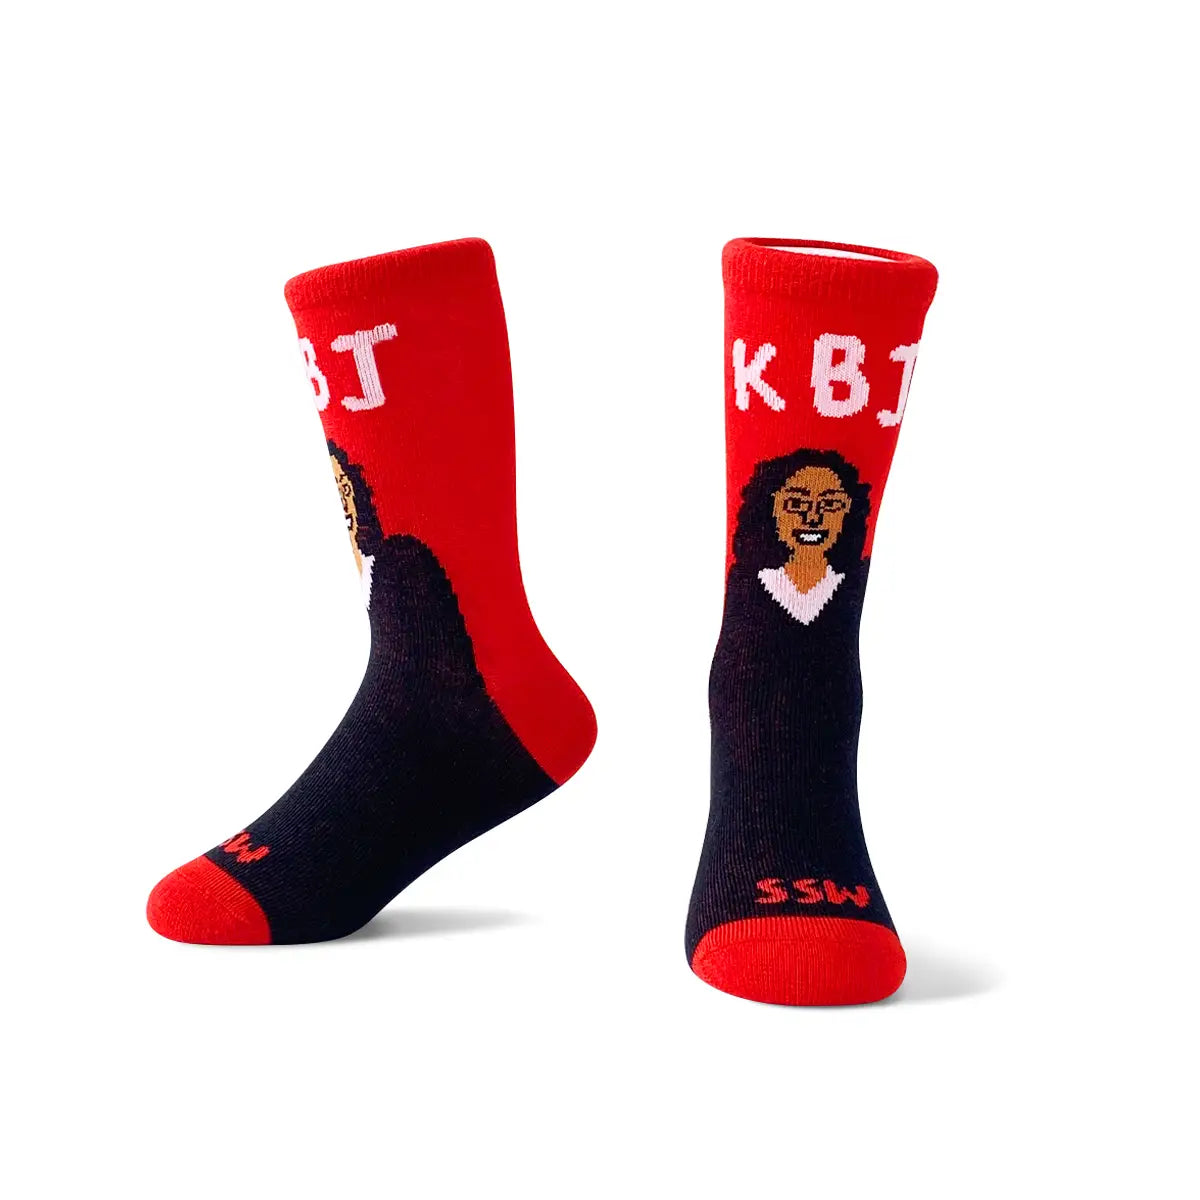 KBJ Toddler Socks